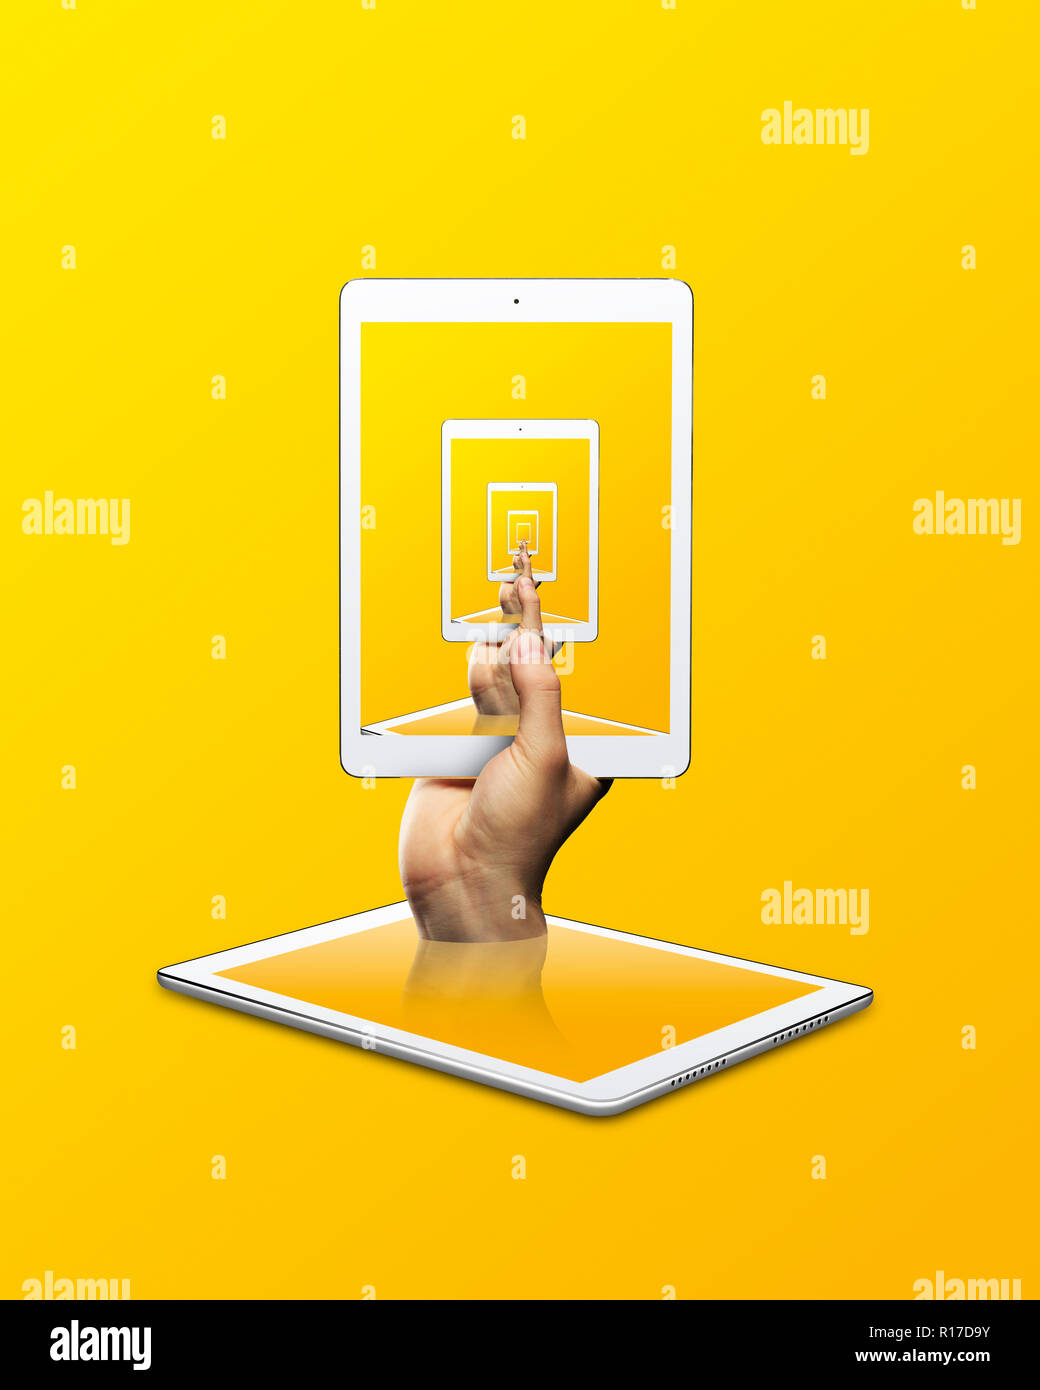 Tableta Digital Persona sosteniendo con imagen repetida contra el fondo amarillo Foto de stock